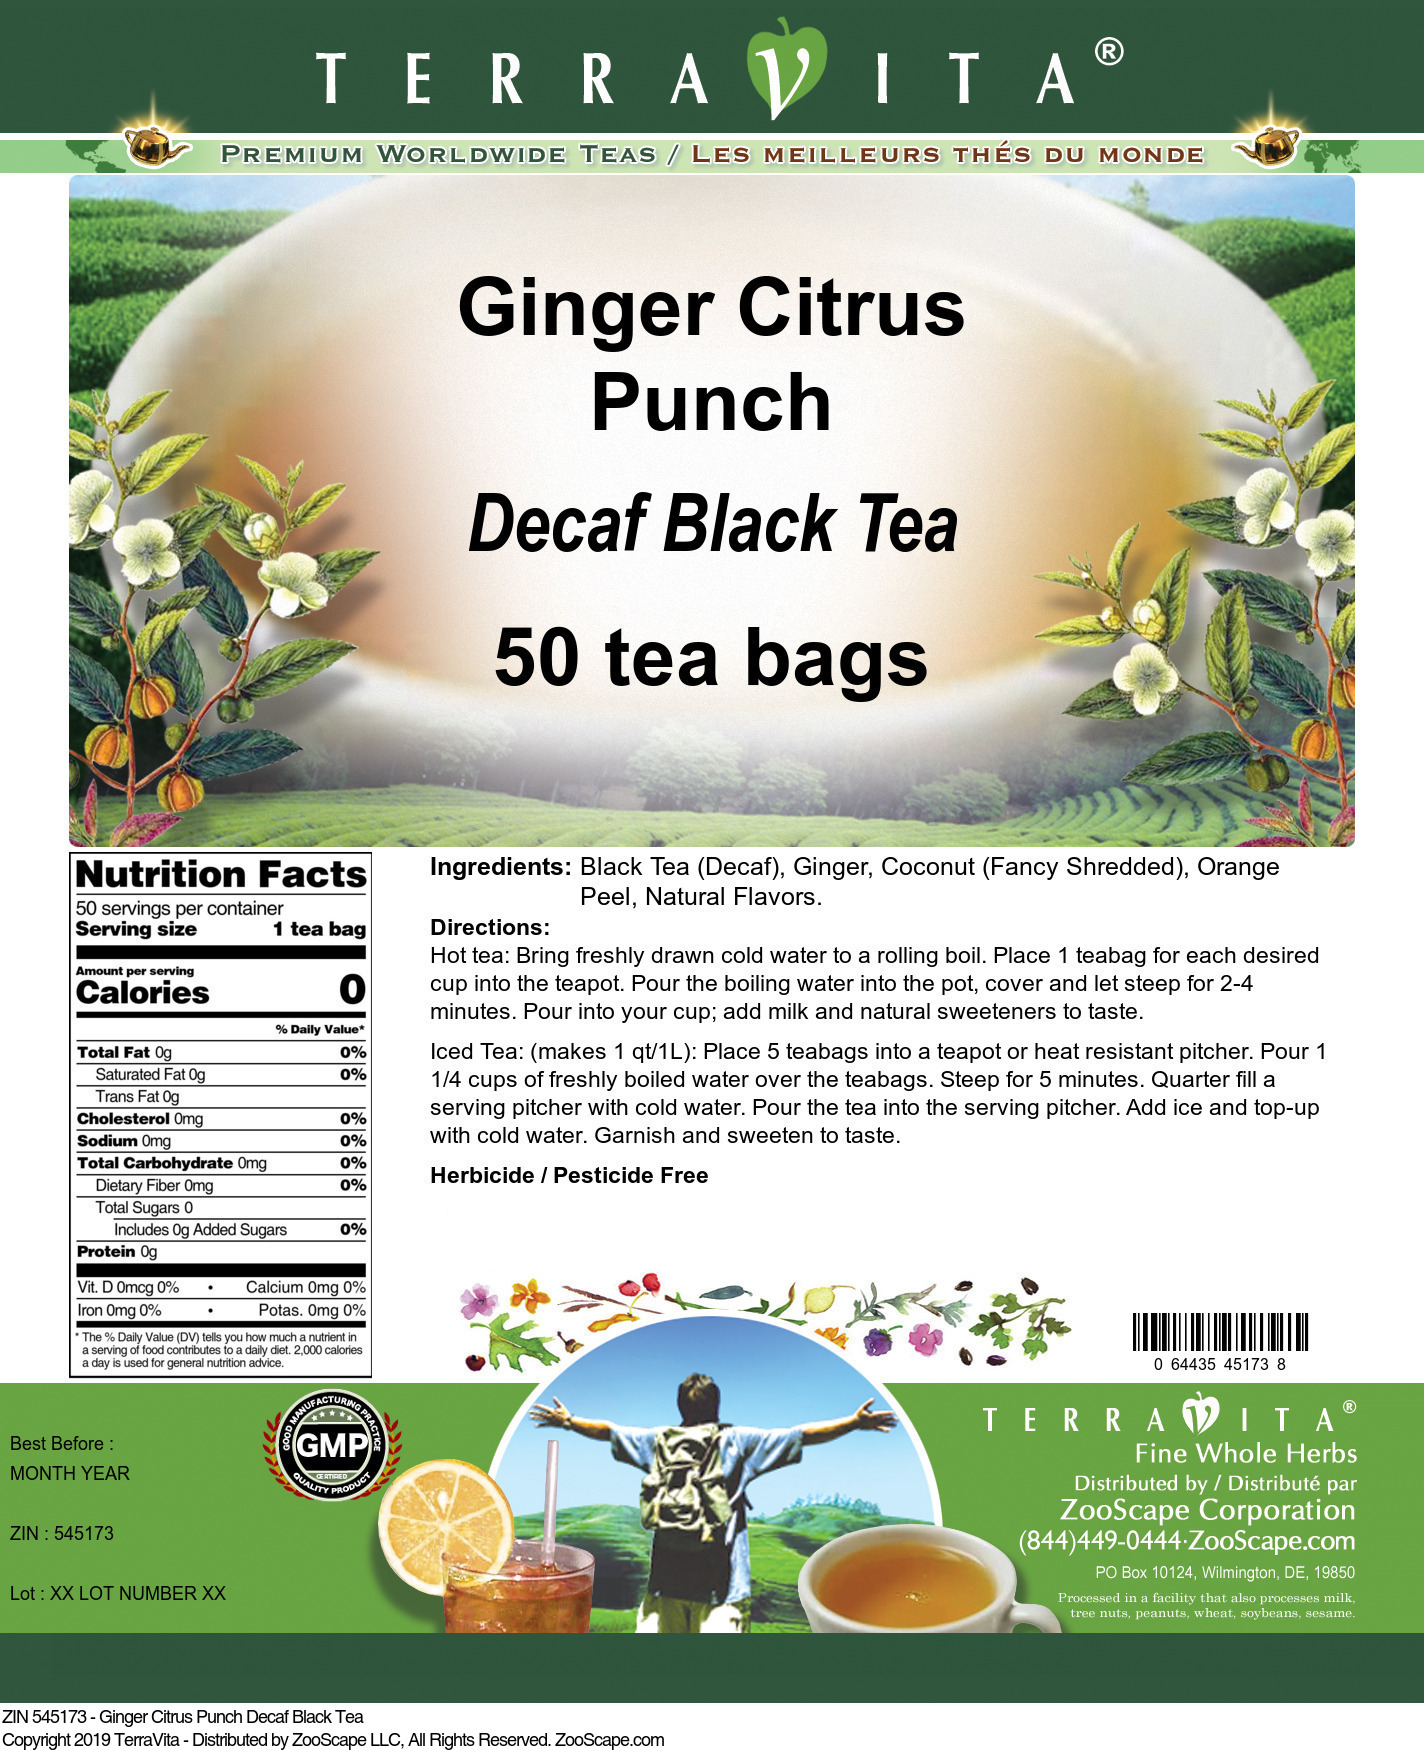 Ginger Citrus Punch Decaf Black Tea - Label